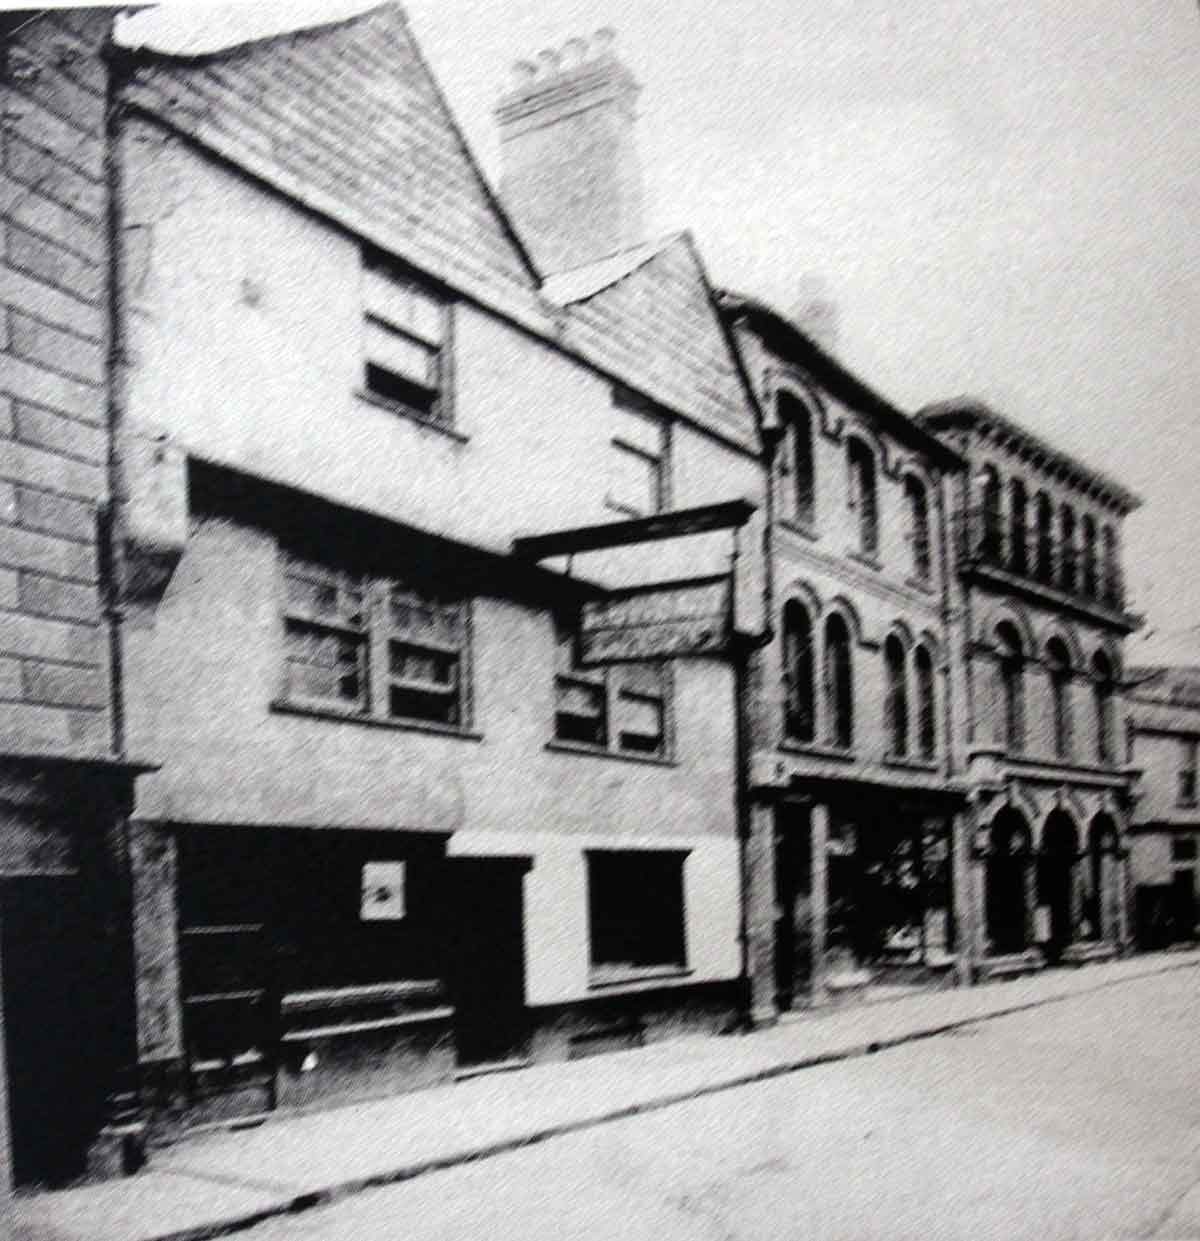 The London Inn 26/28 Church Street c.1900.